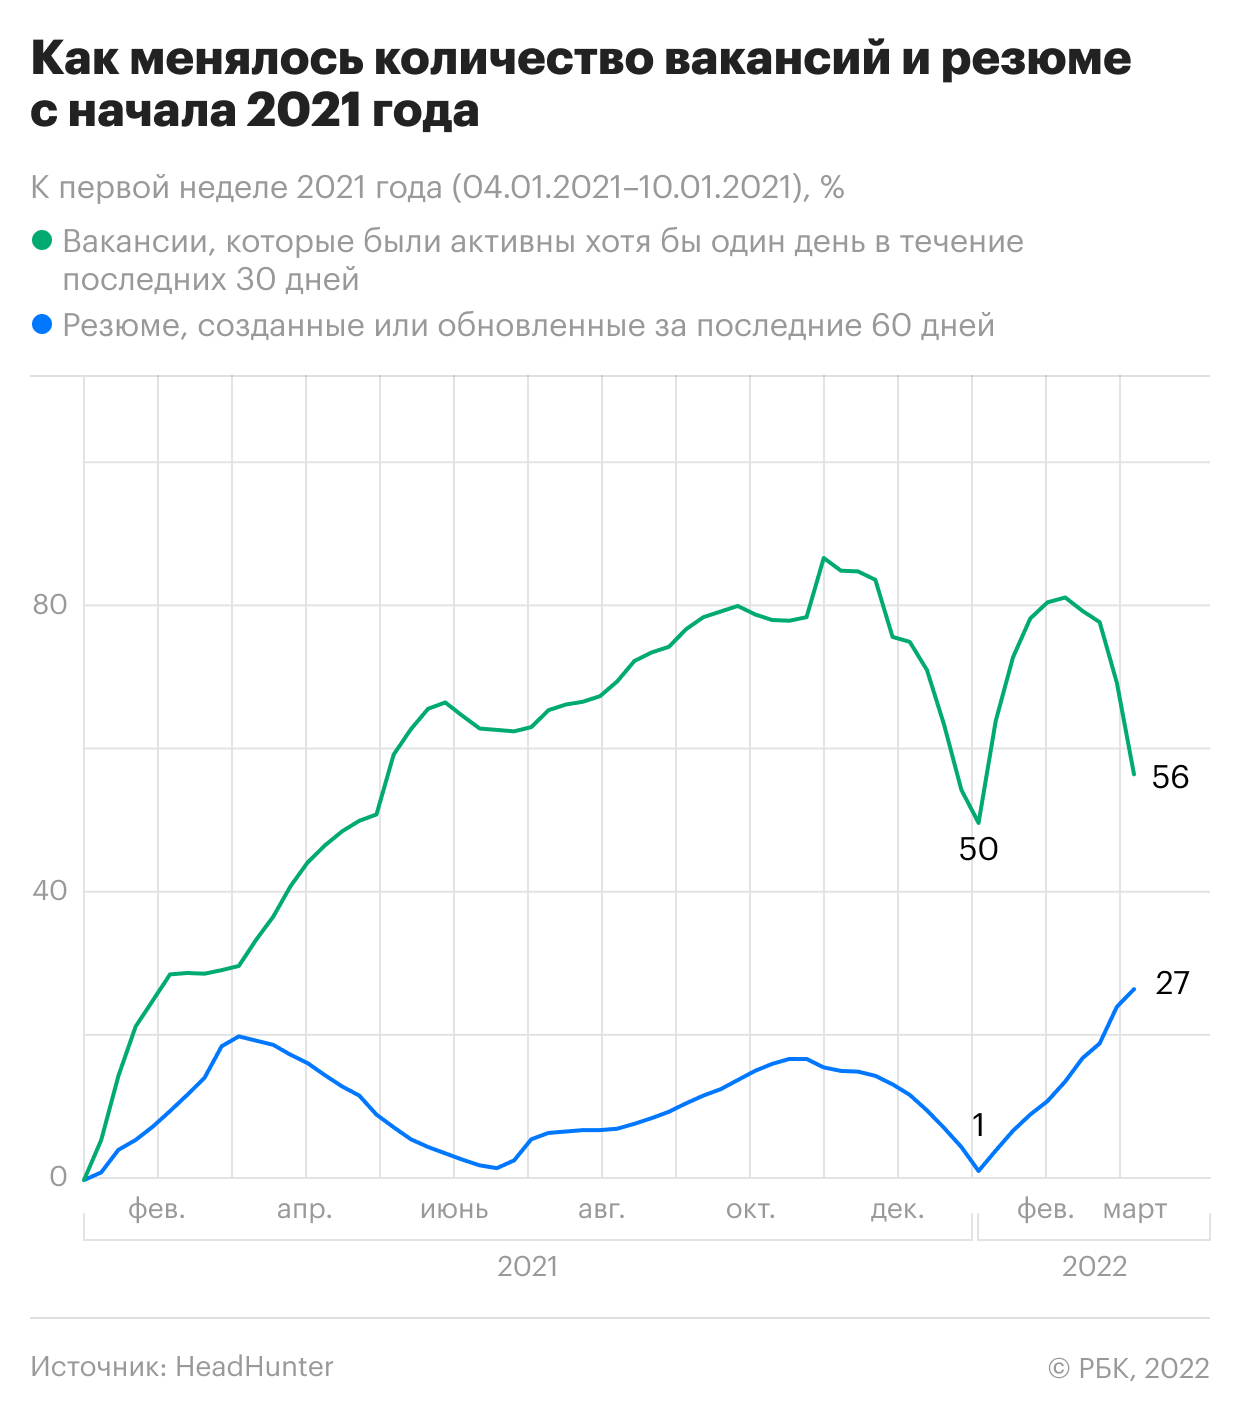 Что происходит с вакансиями и резюме на российском рынке. Инфографика